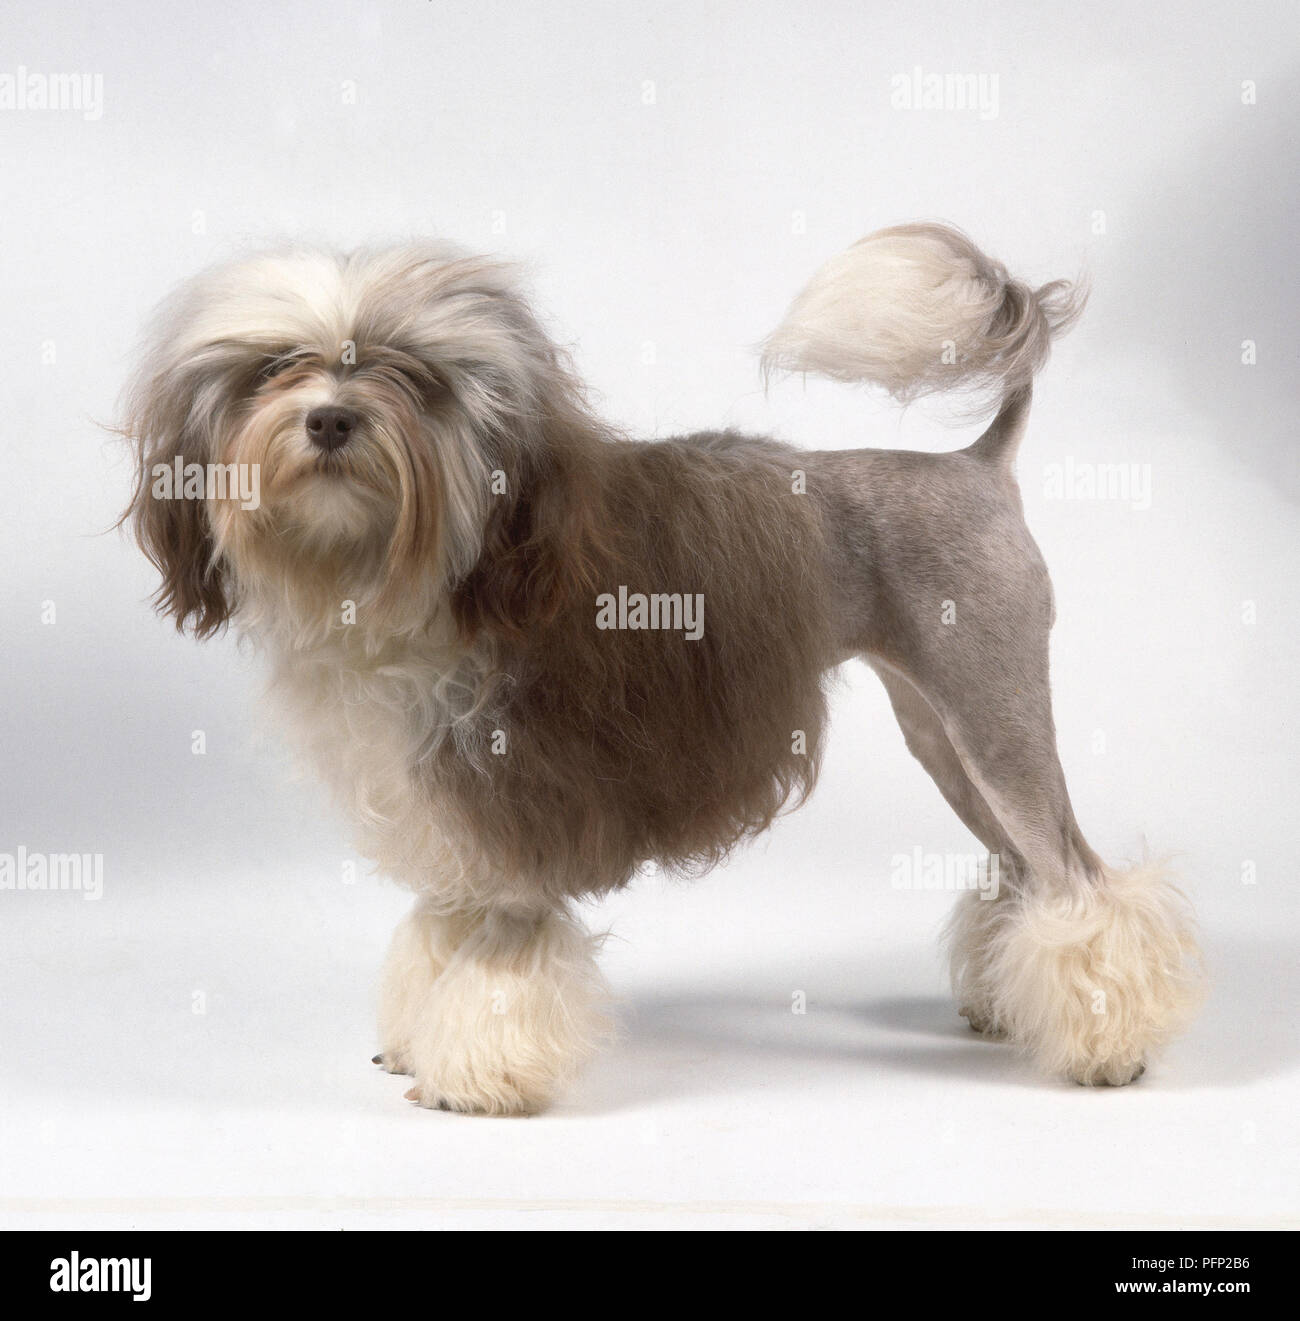 Eine Lowchen Hund mit gräulich-braune Haare auf der Vorderseite des Körpers, rasiert Hinterhand und dekorative Büschel auf die Beine und Schwanz. Stockfoto